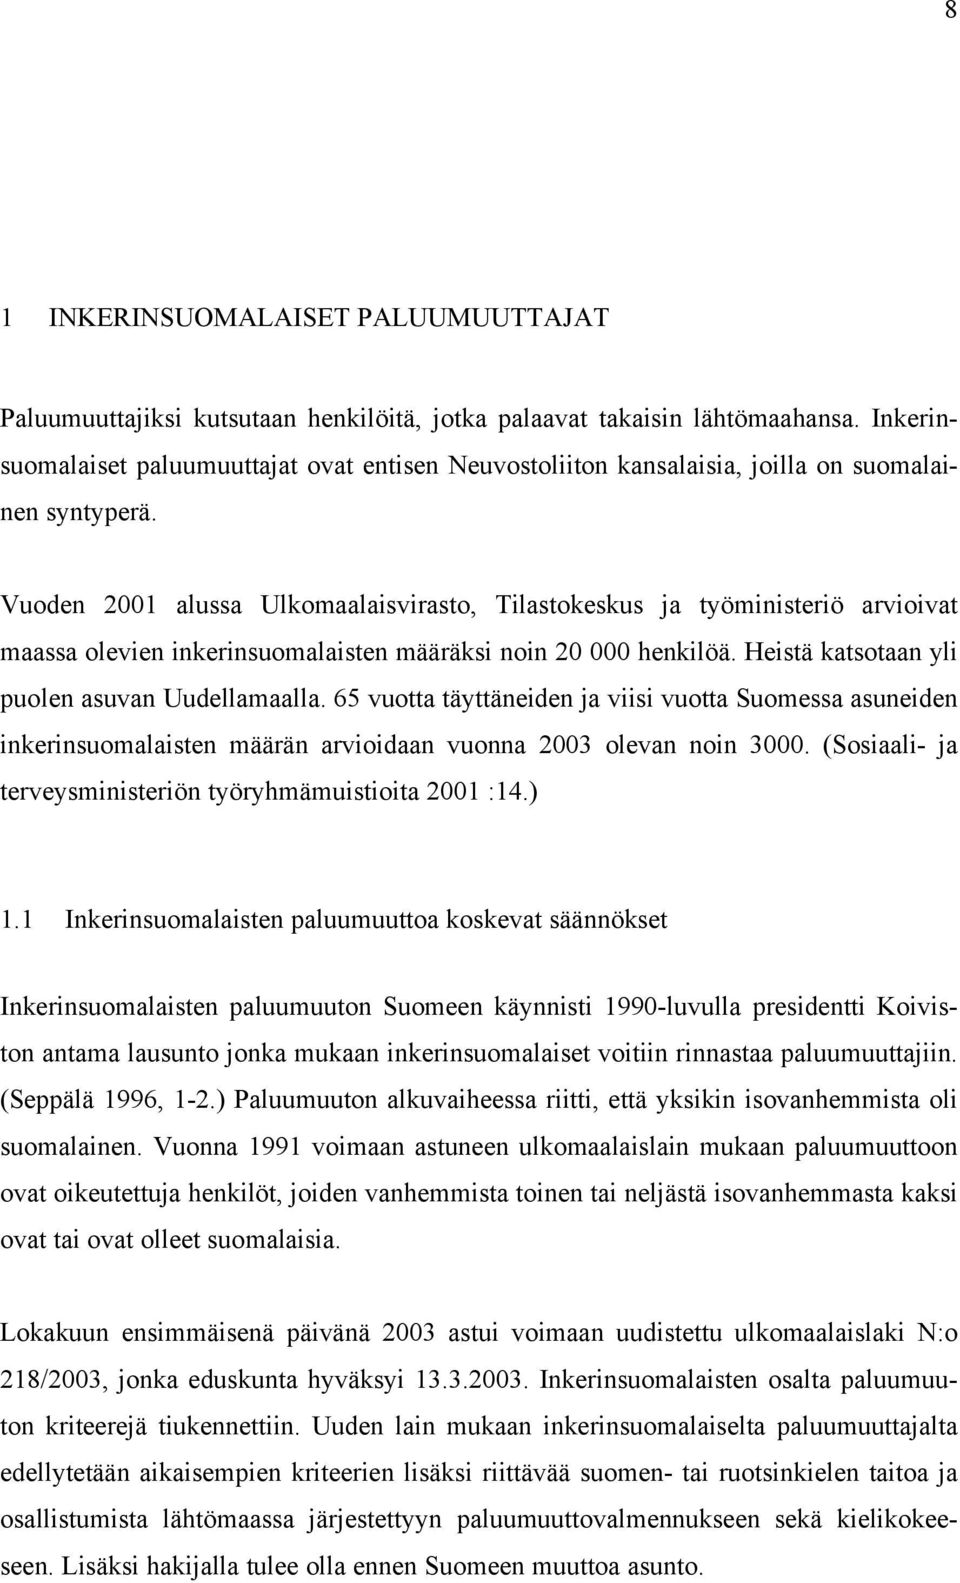 Vuoden 2001 alussa Ulkomaalaisvirasto, Tilastokeskus ja työministeriö arvioivat maassa olevien inkerinsuomalaisten määräksi noin 20 000 henkilöä. Heistä katsotaan yli puolen asuvan Uudellamaalla.